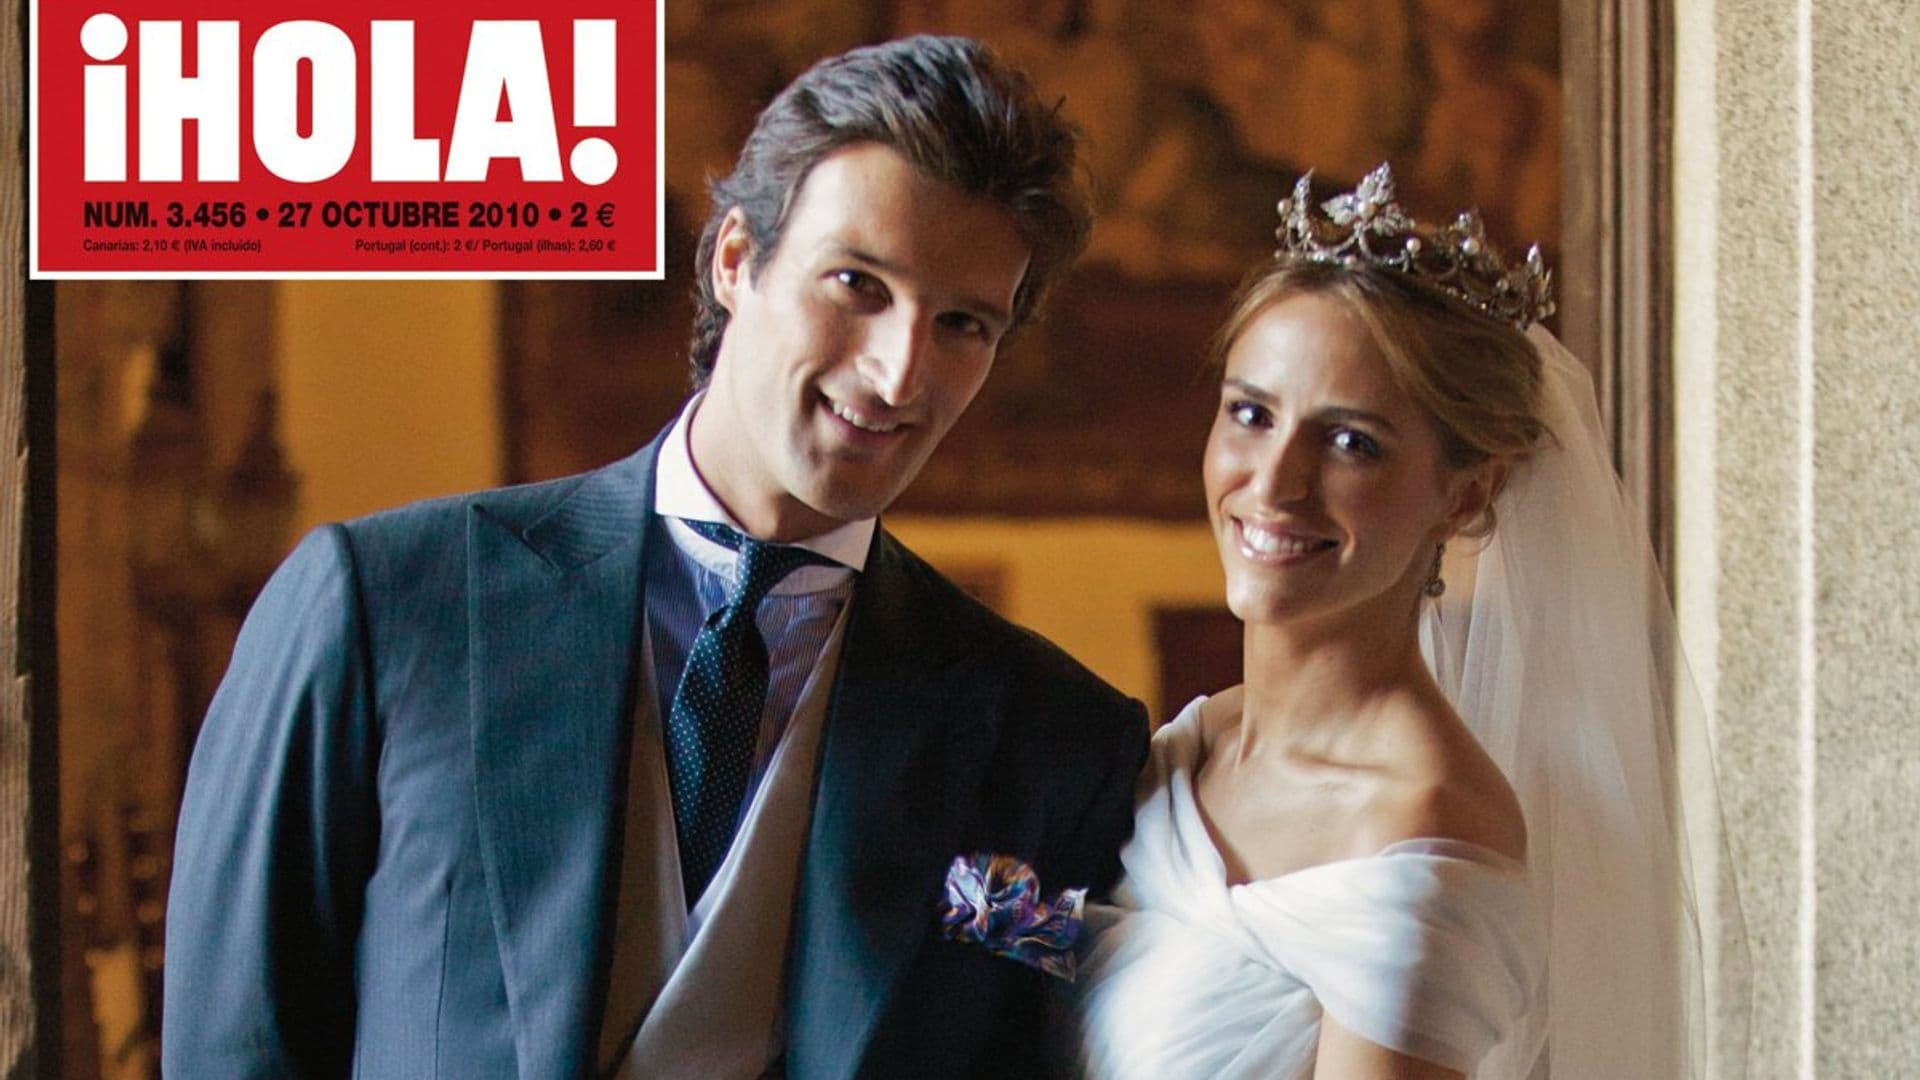 Rafael de Medina y Laura Vecino cumplen 11 años de casados: Así fue su aristocrática boda